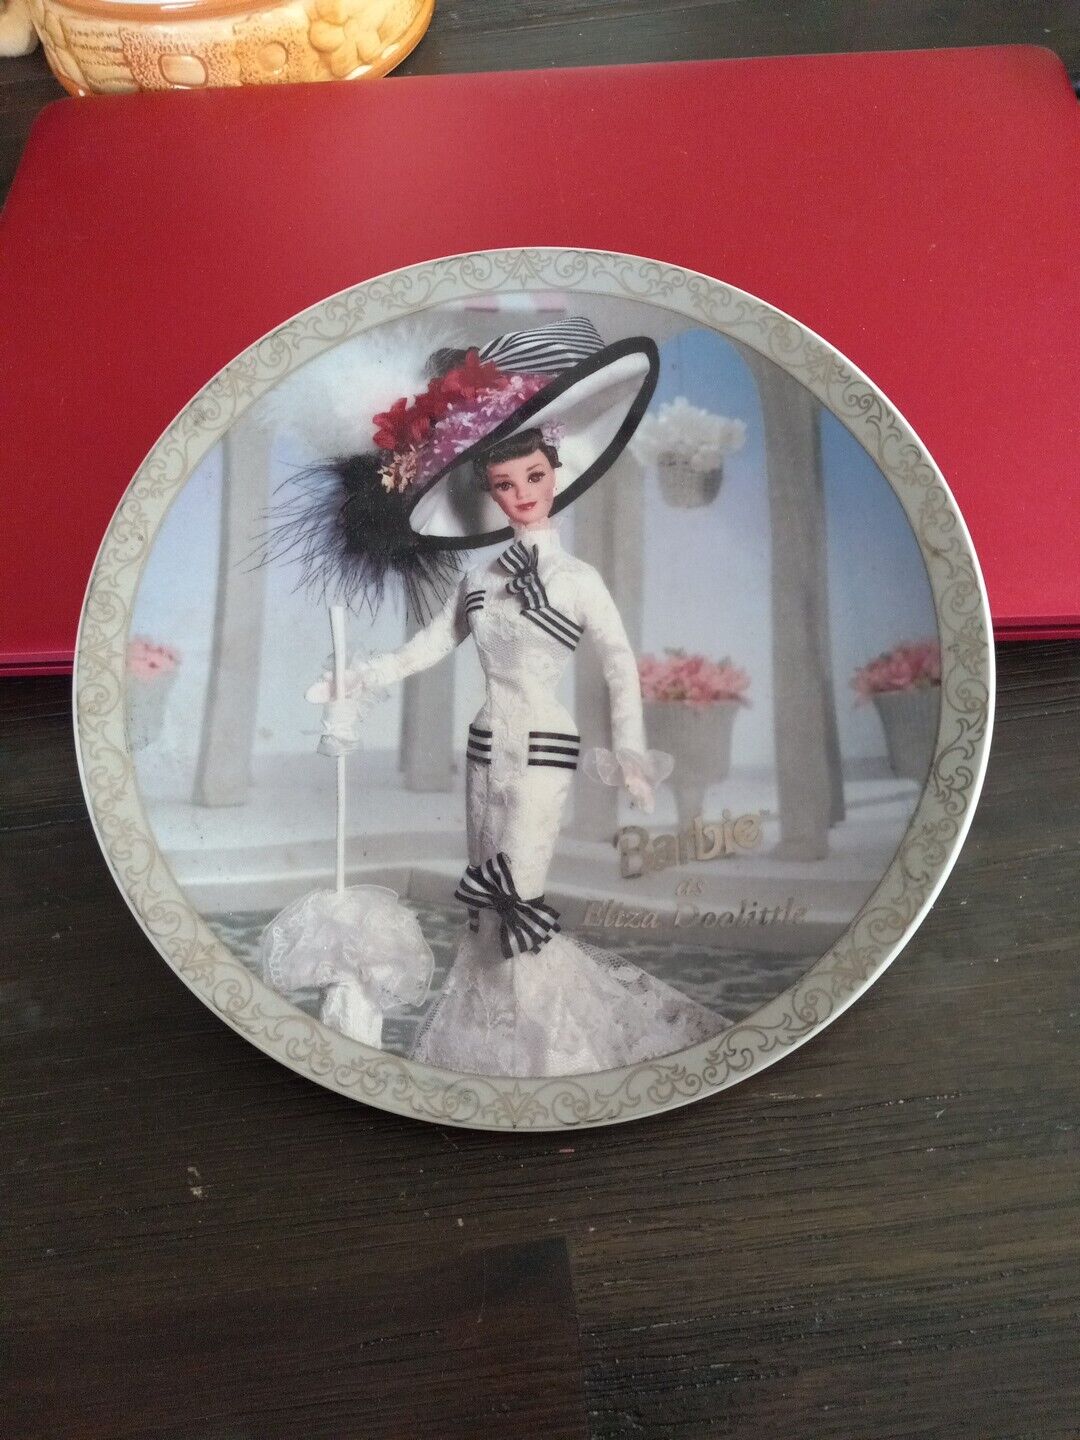 Barbie As Eliza Doolittle Collector Plate 